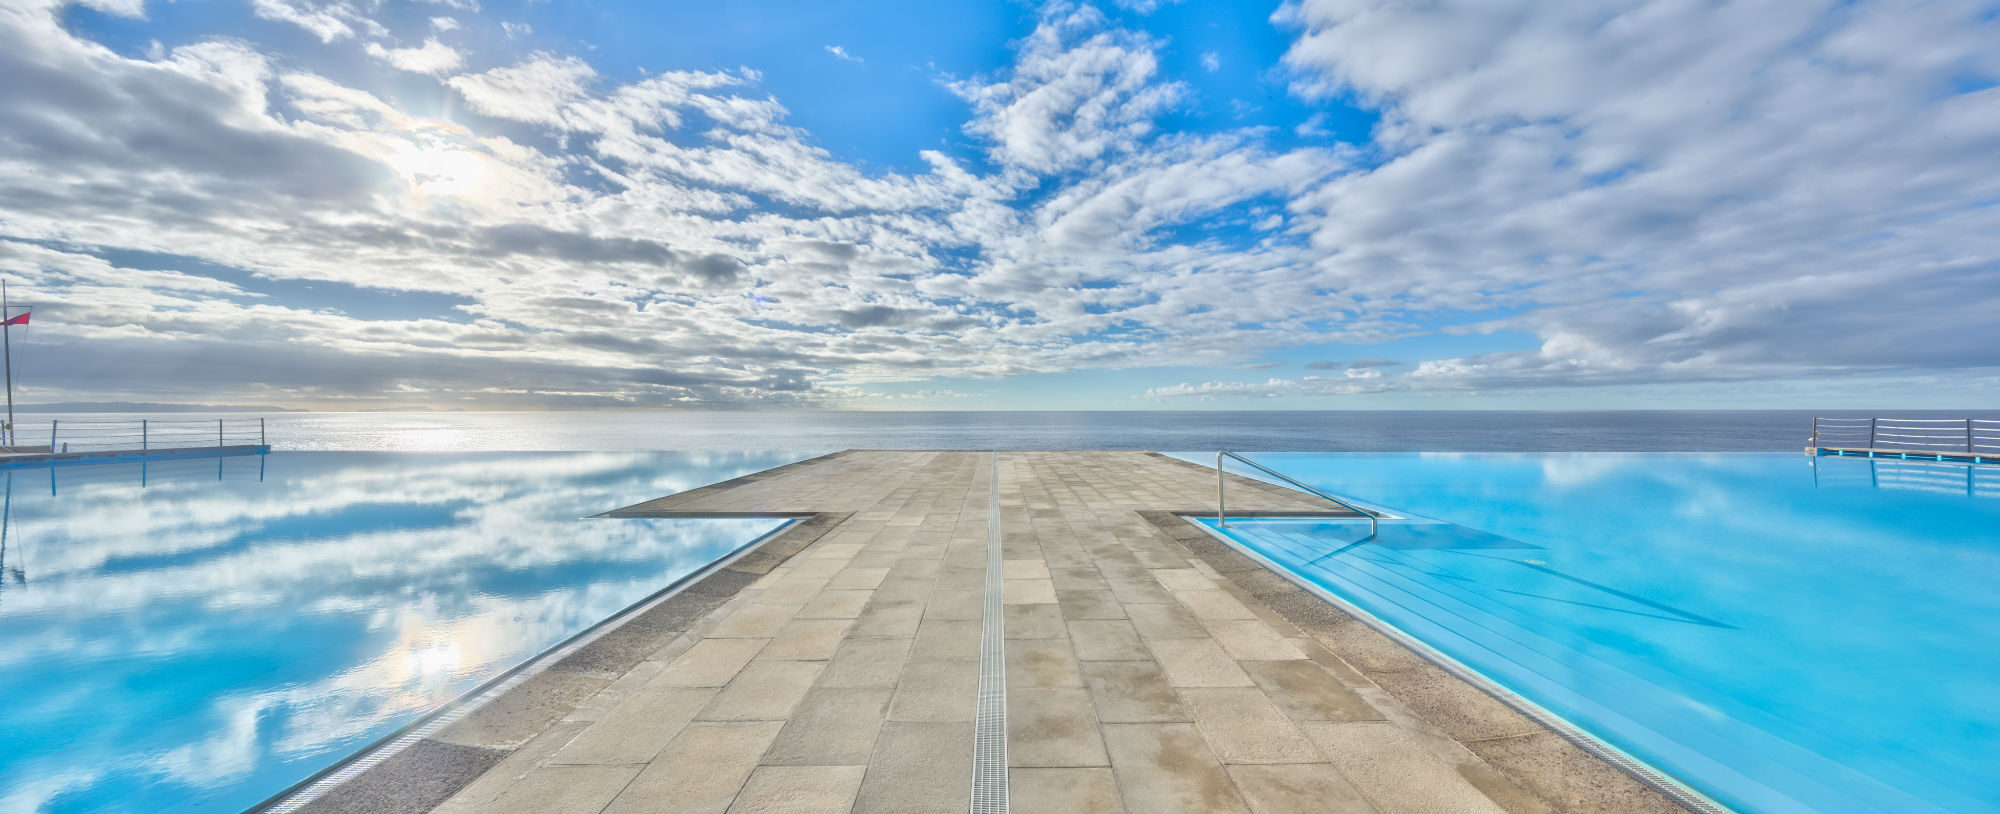 10 piscinas para conhecer estas férias | Unibanco